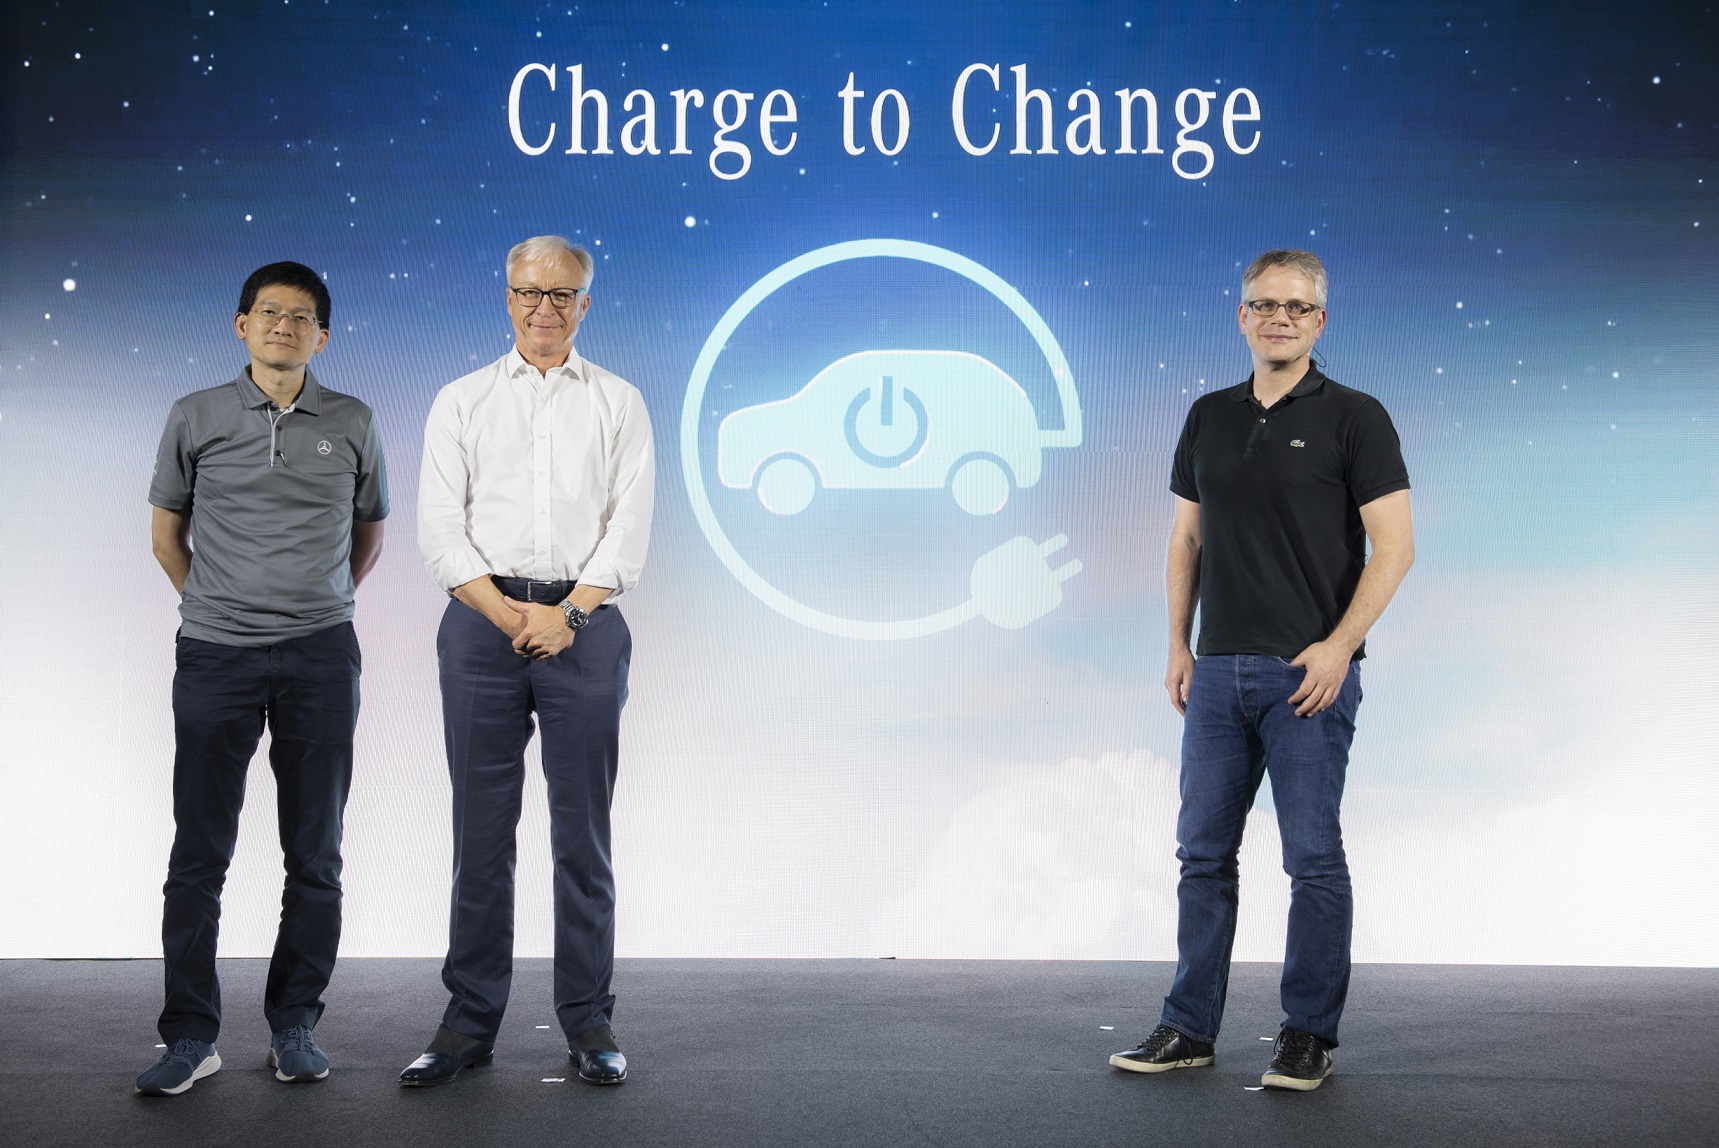 เมอร์เซเดส-เบนซ์ เปิดโครงการ “Charge to Change” ชวนผู้ใช้รถยนต์ปลั๊กอินไฮบริด ชาร์จ เพื่อเปลี่ยนโลก